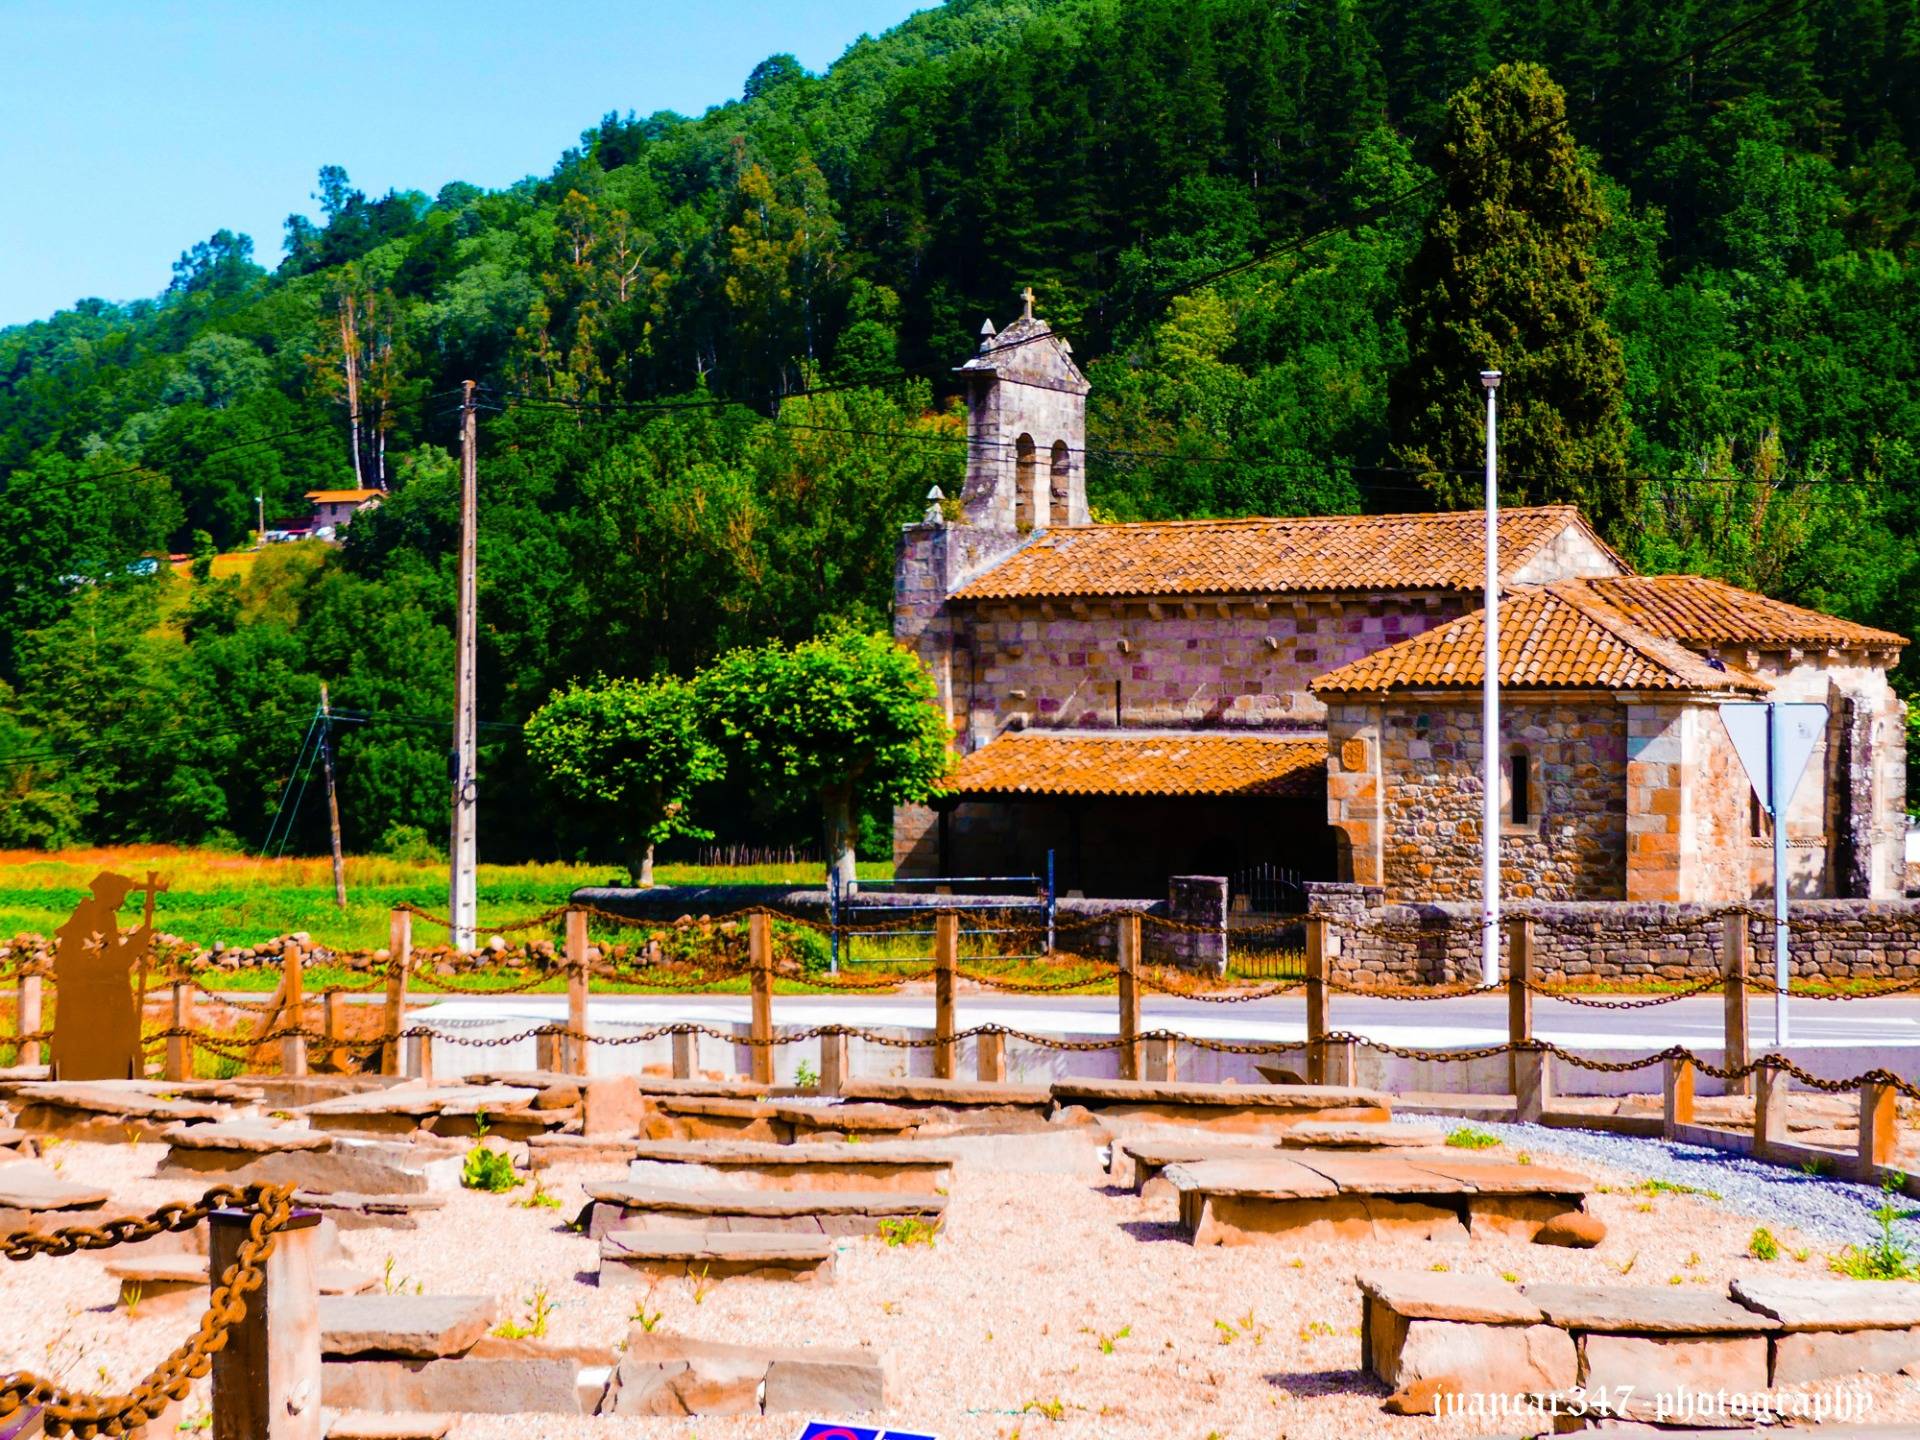 Cantabria: a journey through time by Raicedo